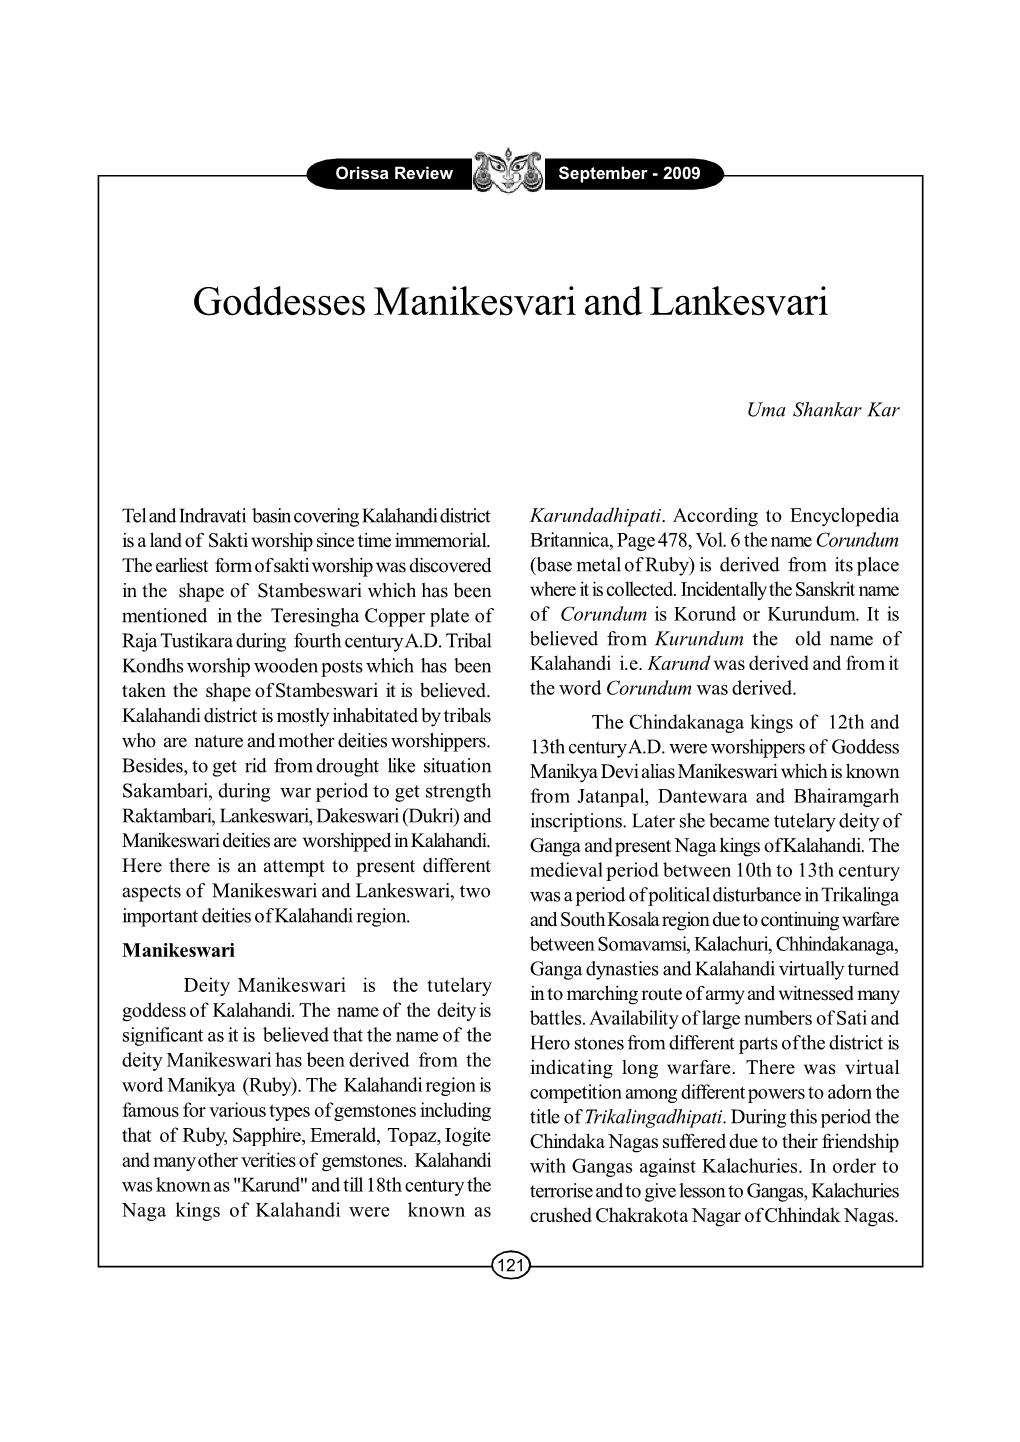 Goddess Manikeswari and Lankesvari